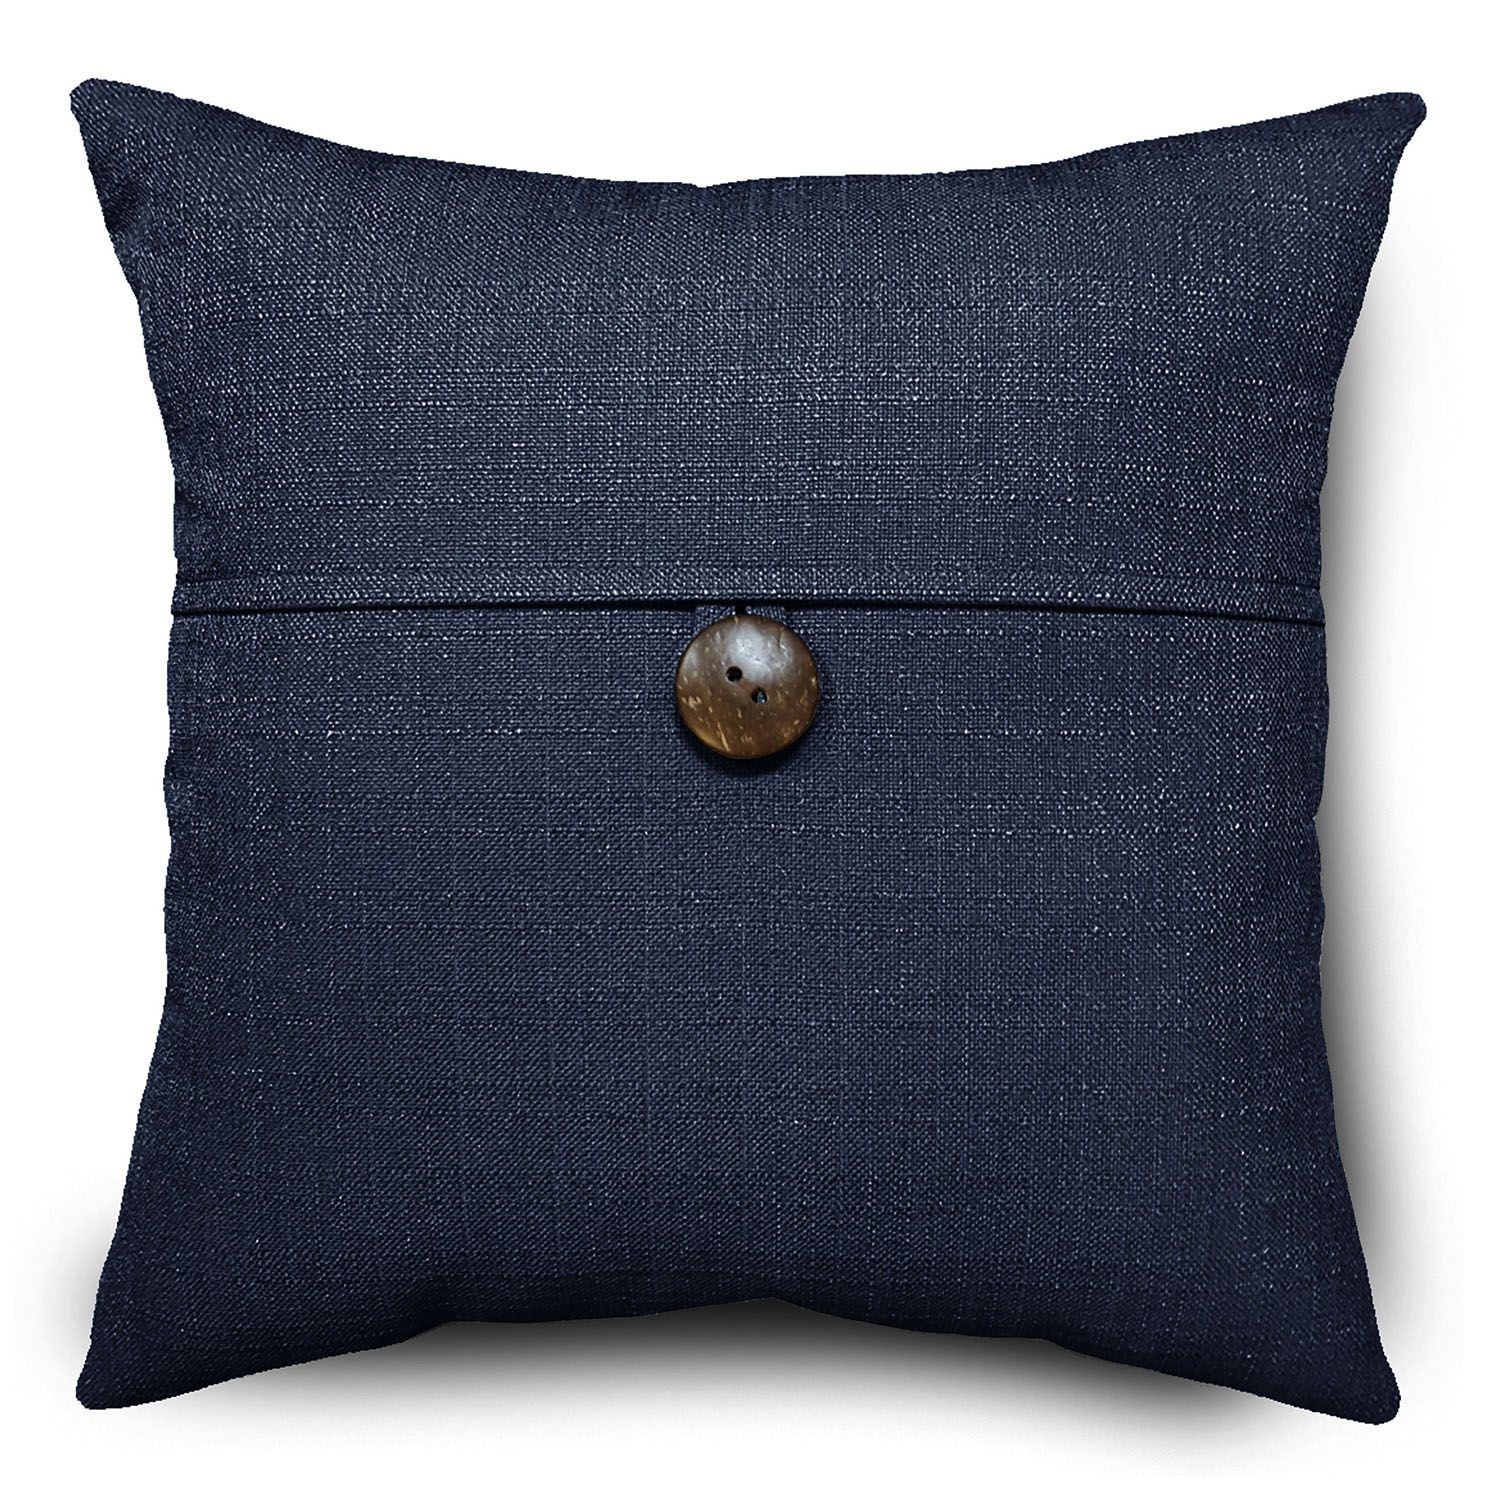 Blue Throw Pillows | Kohl's